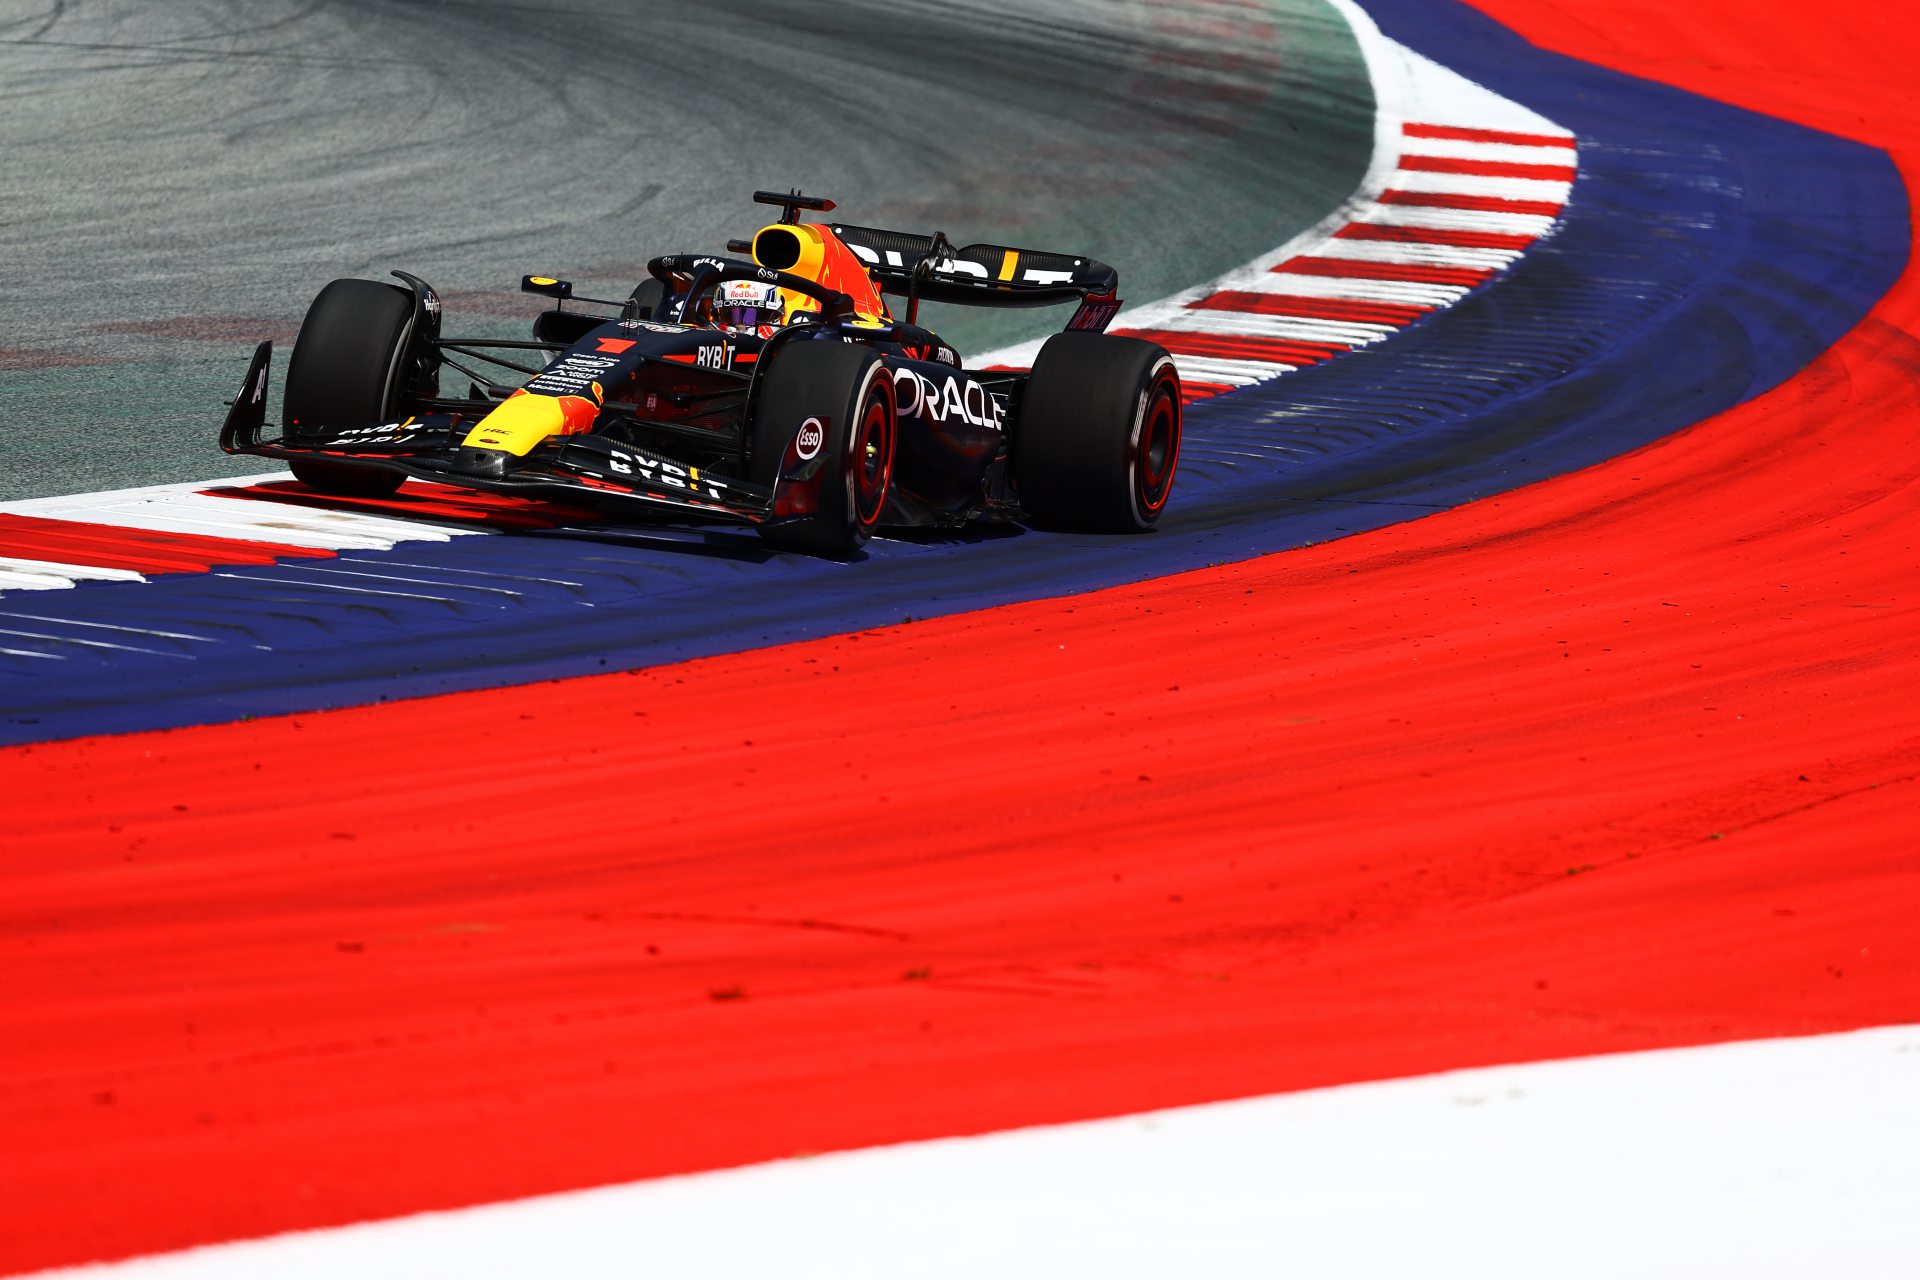 Fórmula 1: como assistir ao treino do GP da Áustria online